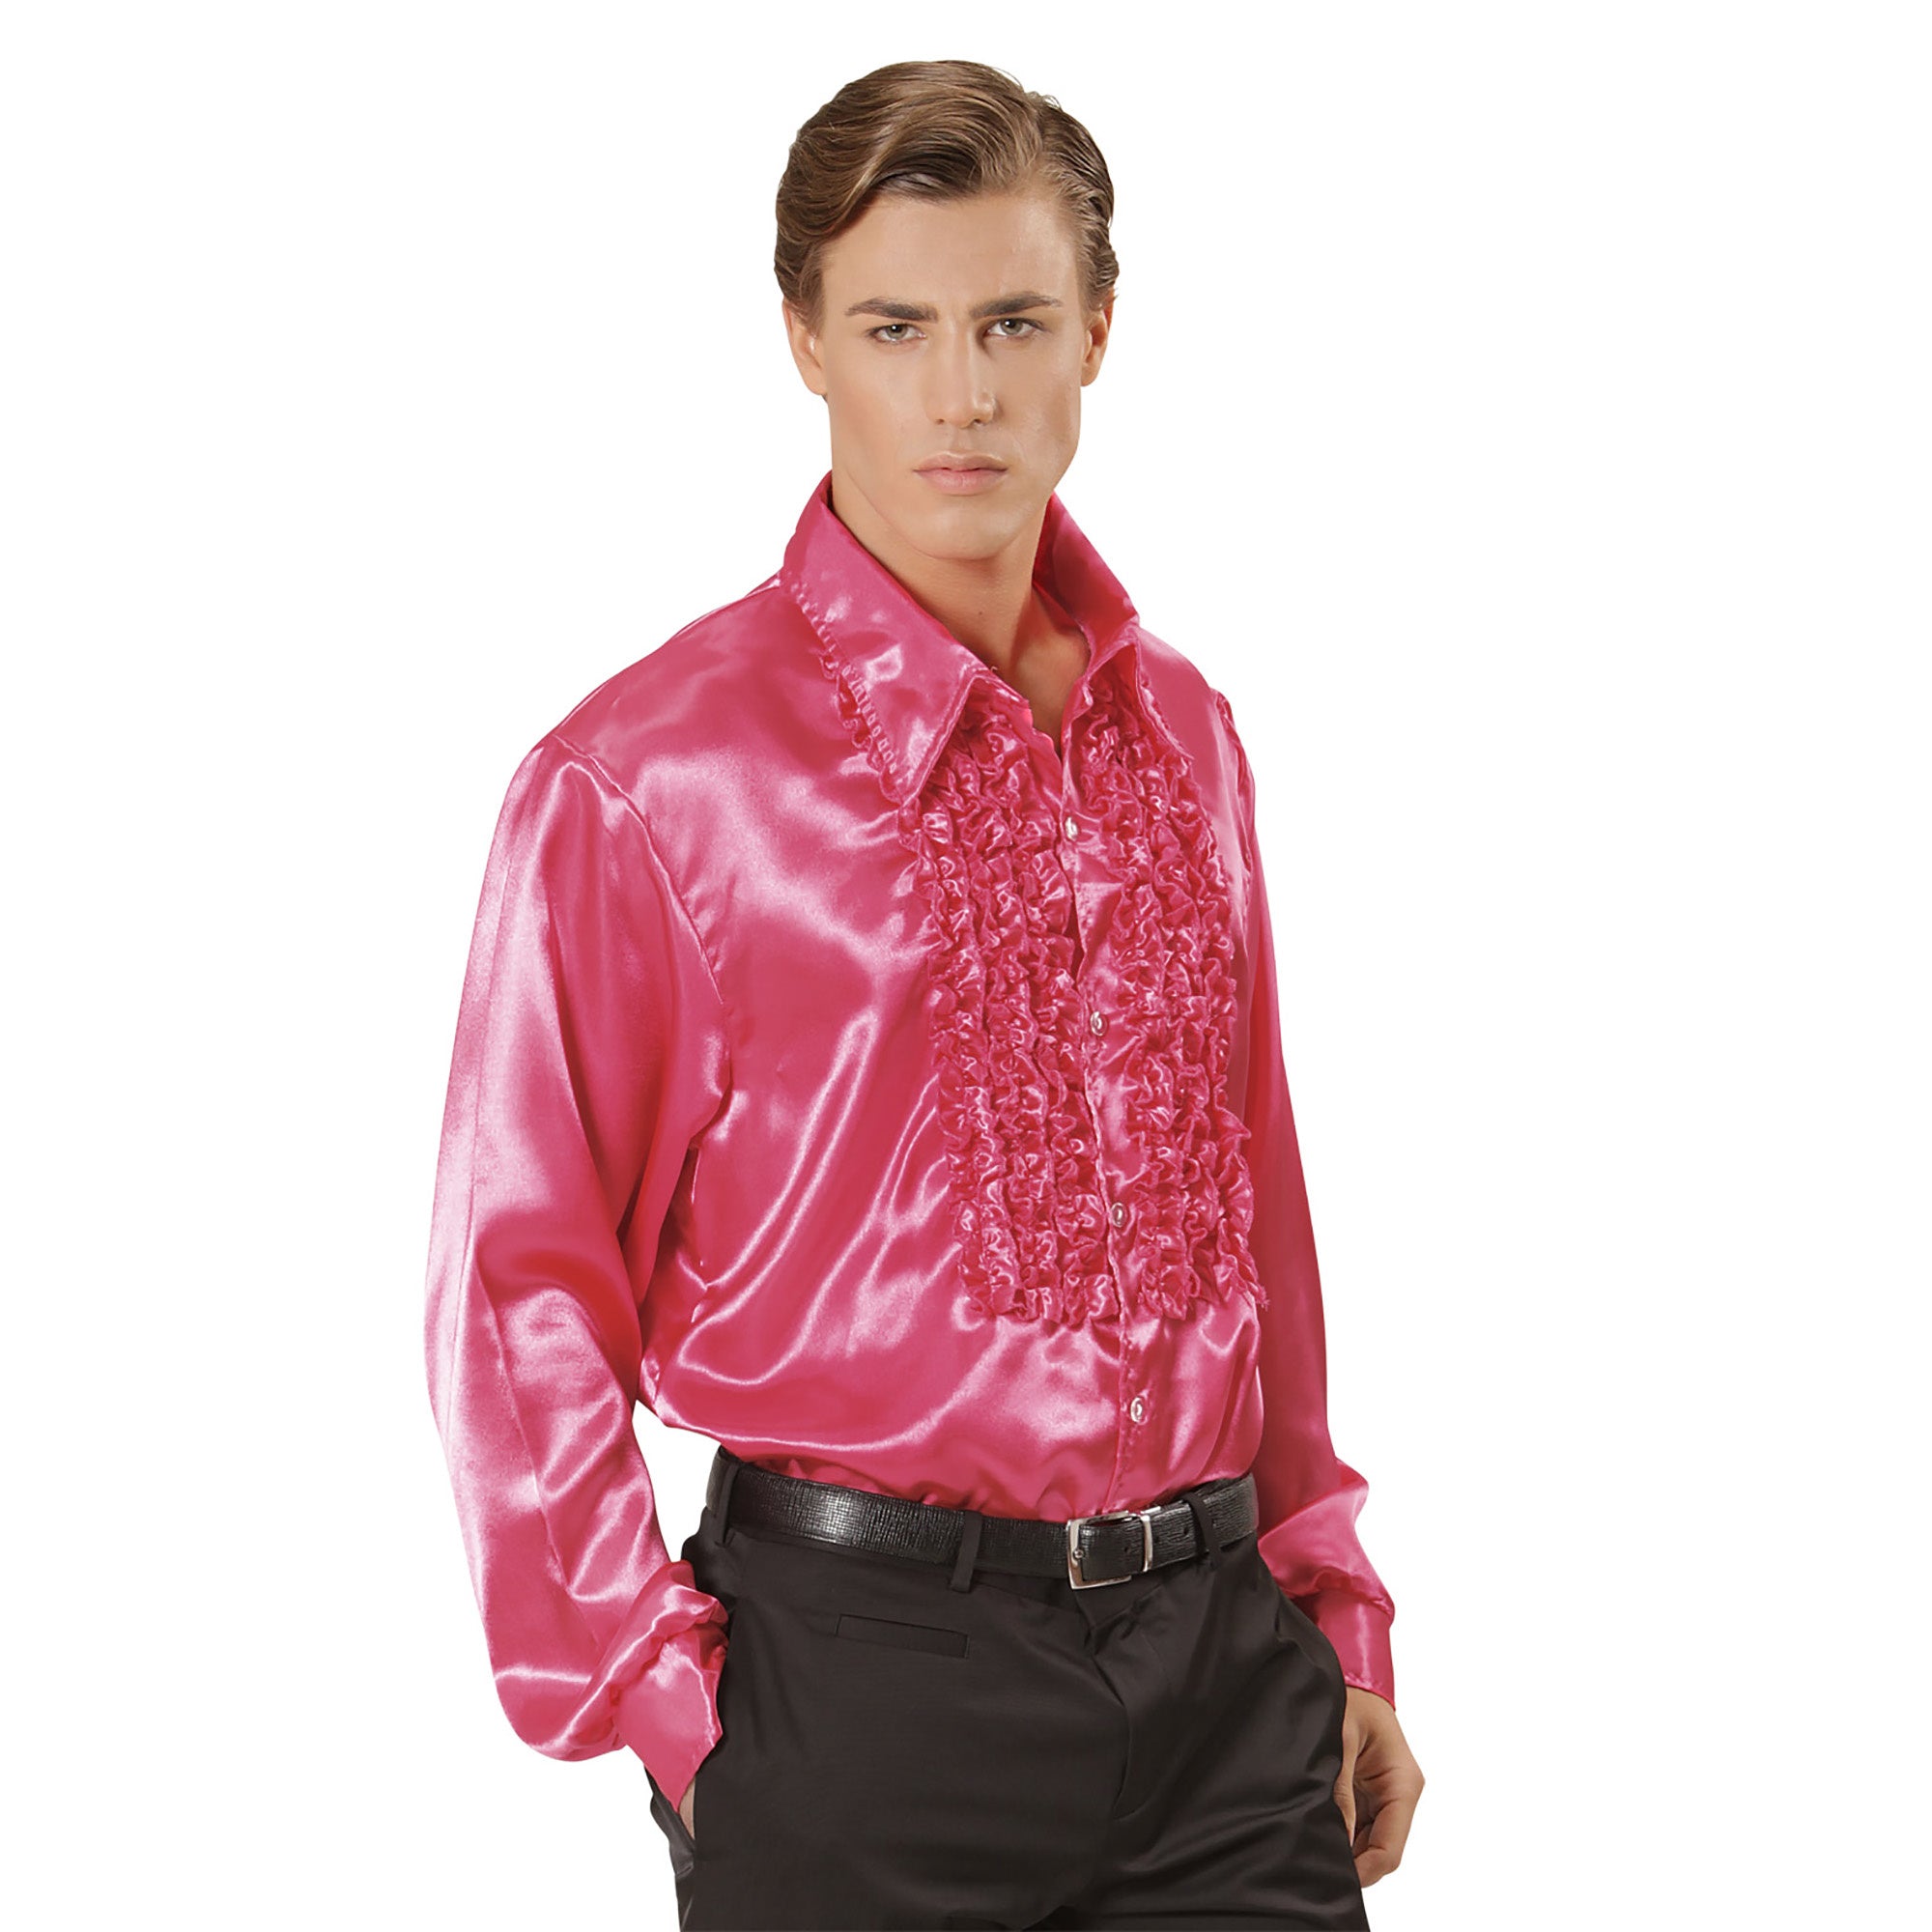 Widmann - Jaren 80 & 90 Kostuum - Lekker Foute Rouchenblouse Roze Man - roze - XXL - Carnavalskleding - Verkleedkleding